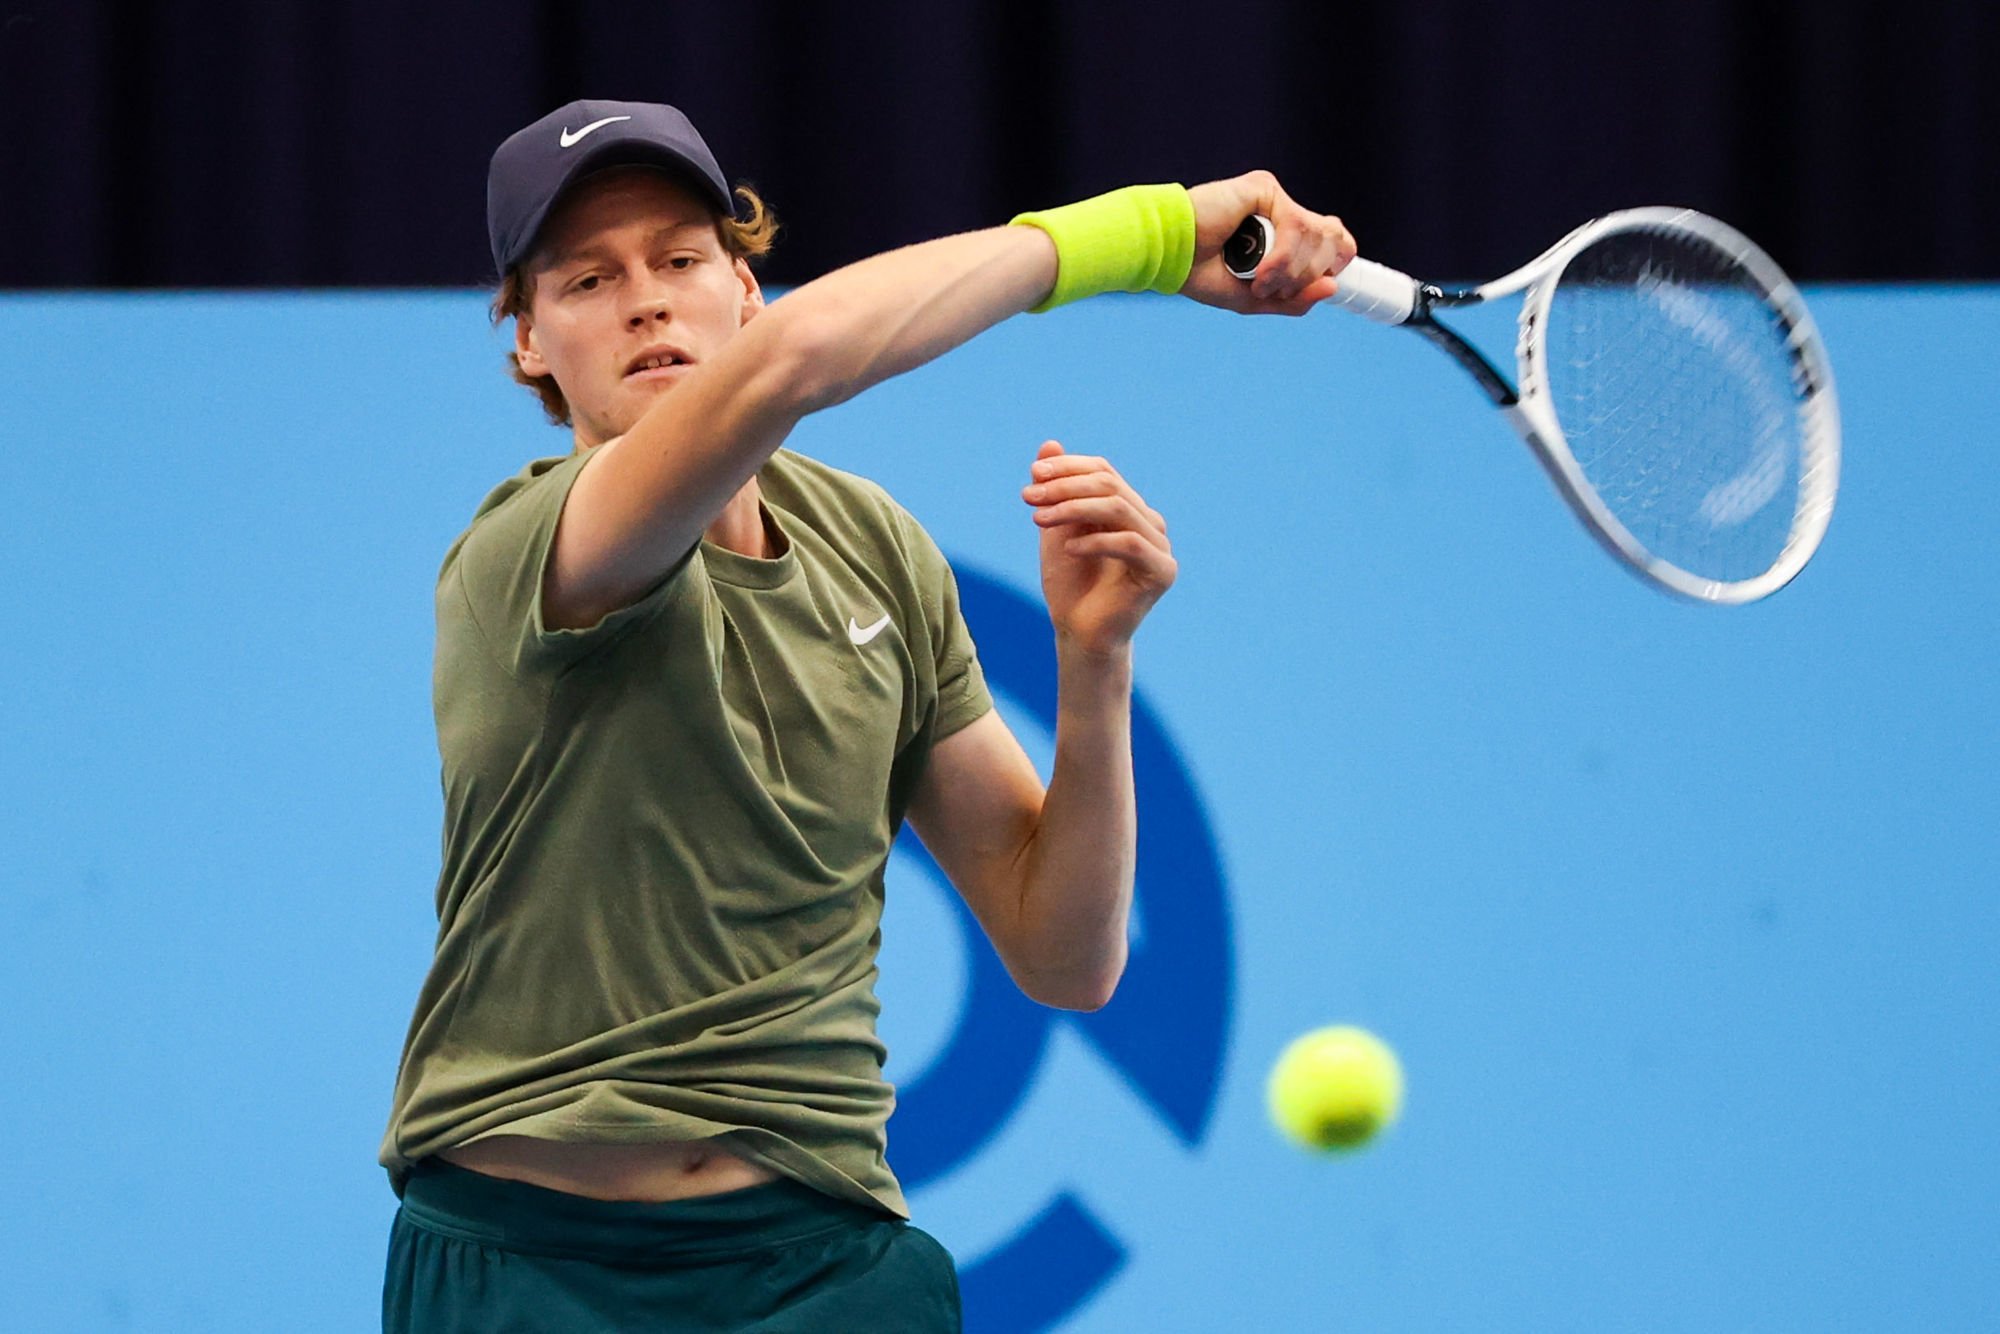 Jannik Sinner décroche à 19 ans son premier titre ATP - Sport.fr